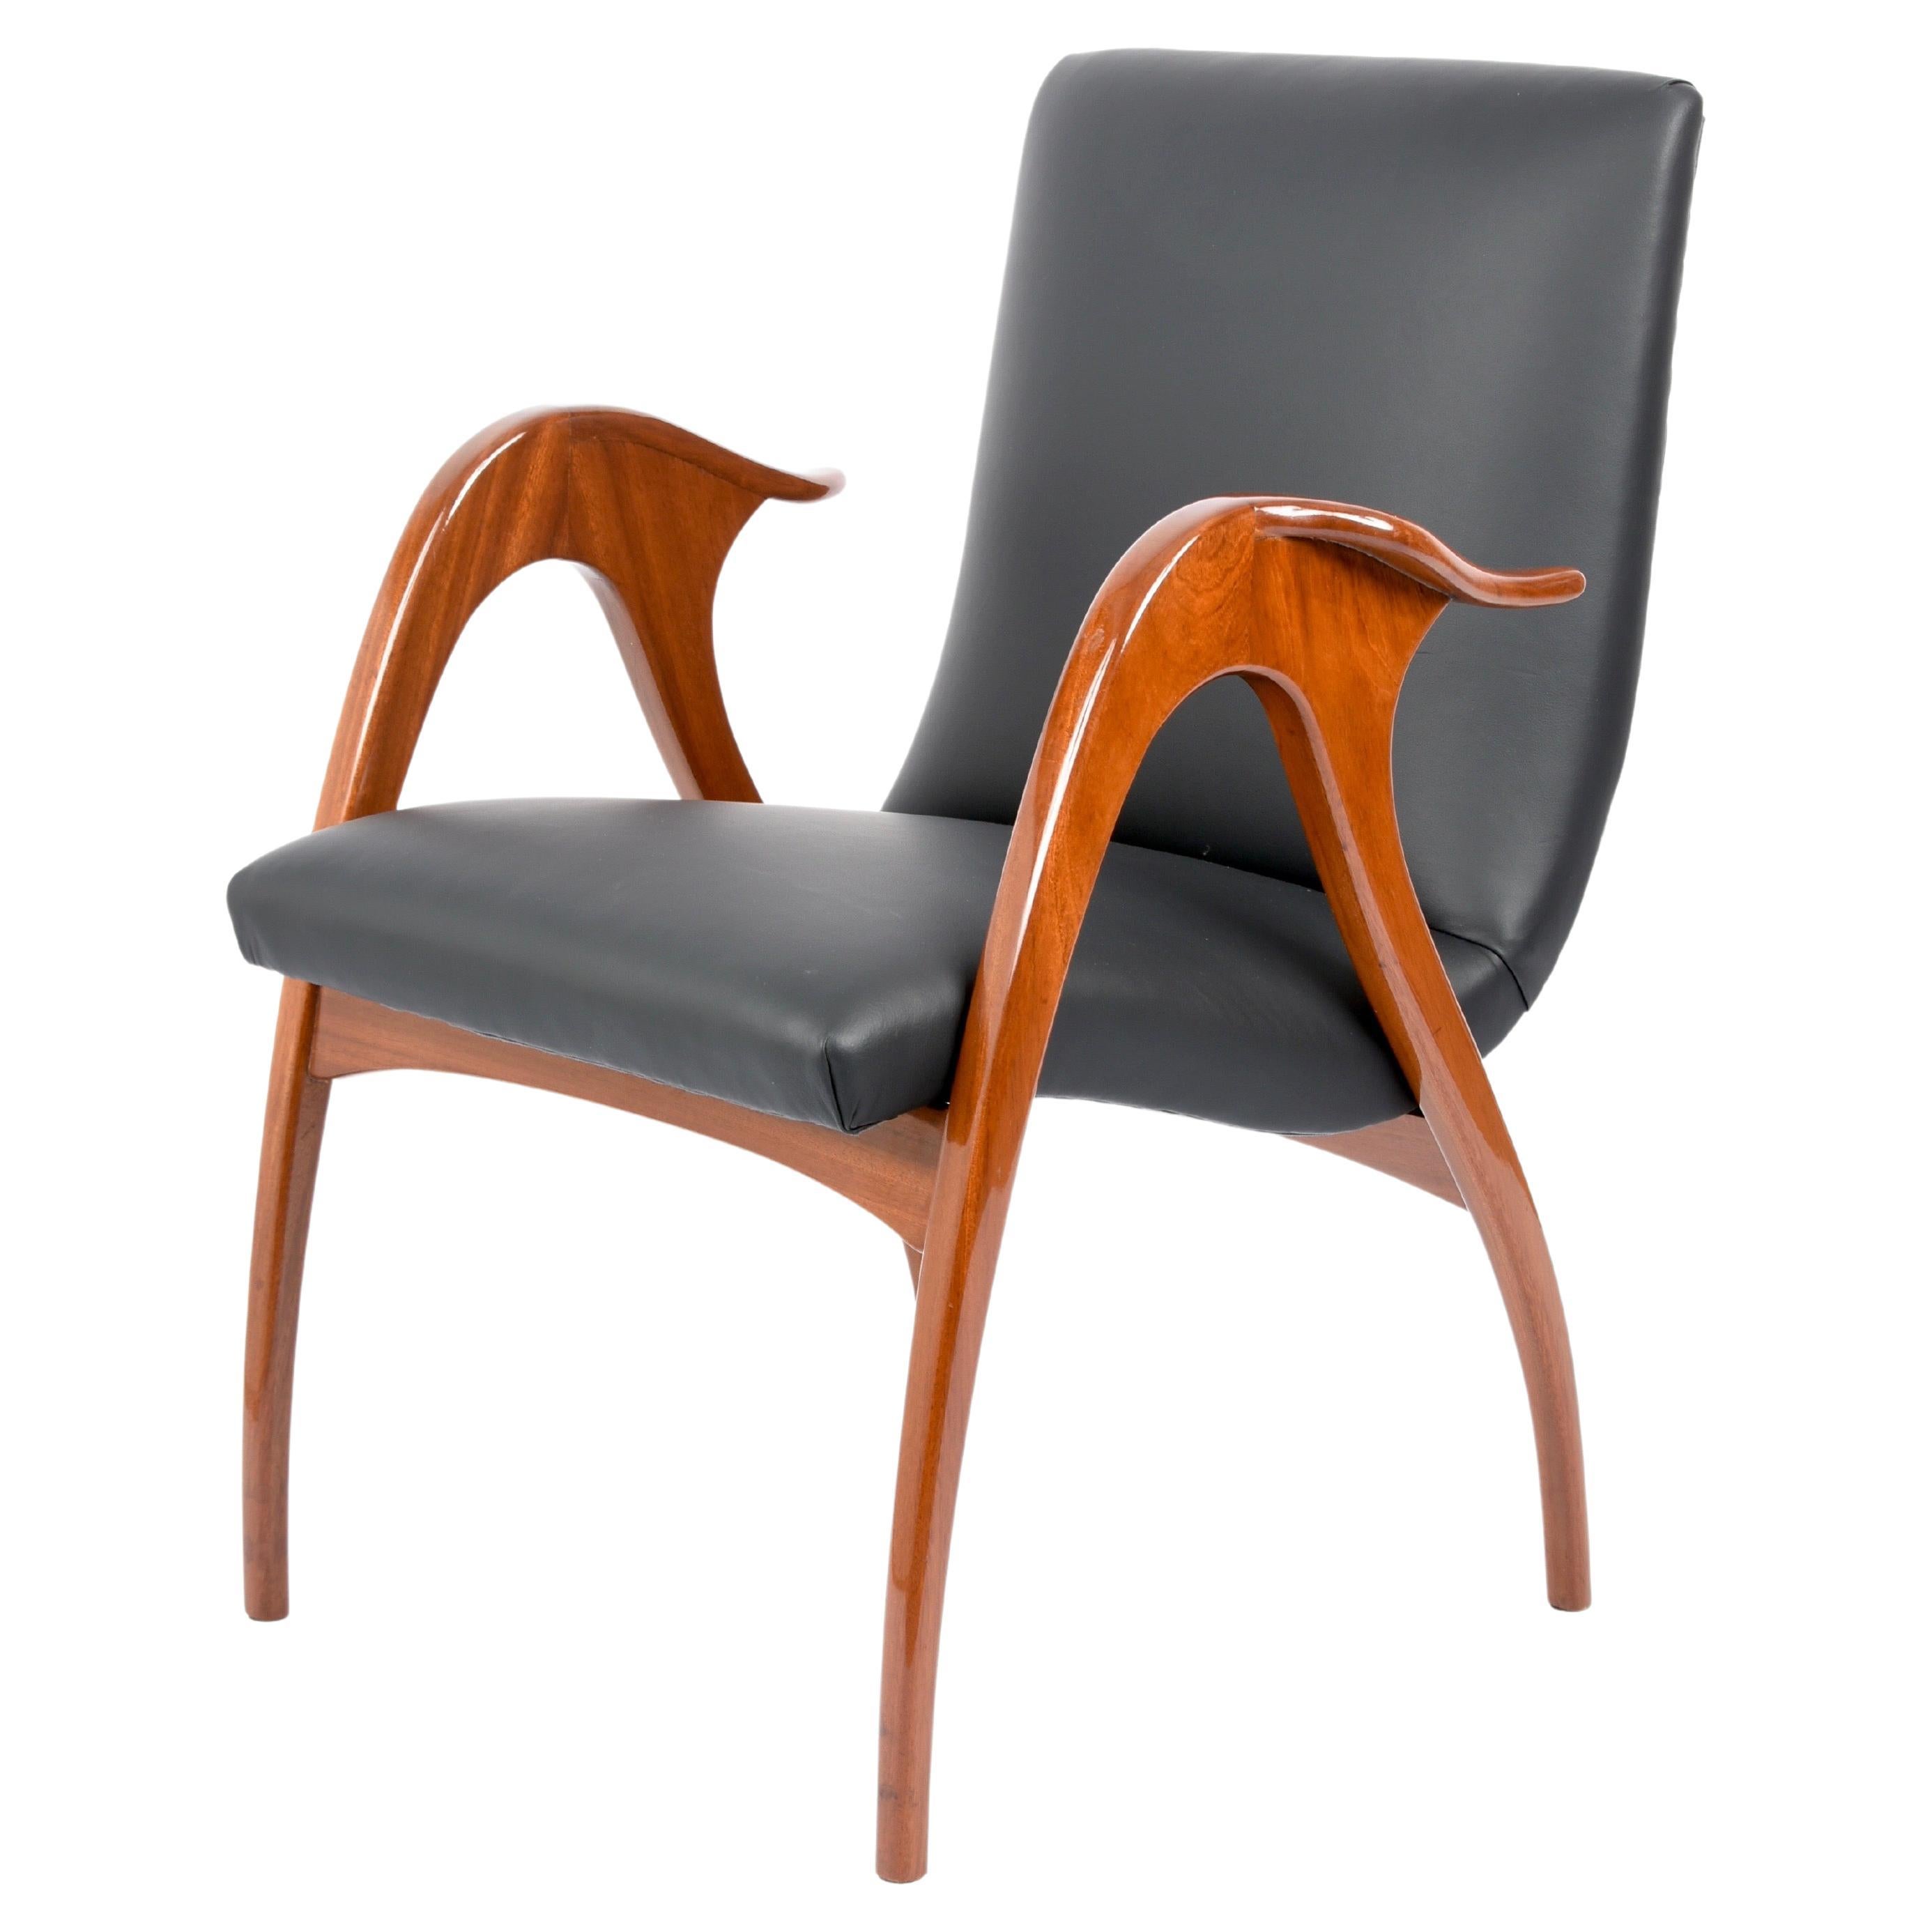 Unglaublicher Sessel aus der Mitte des Jahrhunderts in Walnuss und schwarzem Leder. Dieses fantastische Stück wurde von Malatesta & Mason entworfen und in der ersten Hälfte der 1950er Jahre in Italien hergestellt. 

Der Sessel wurde professionell